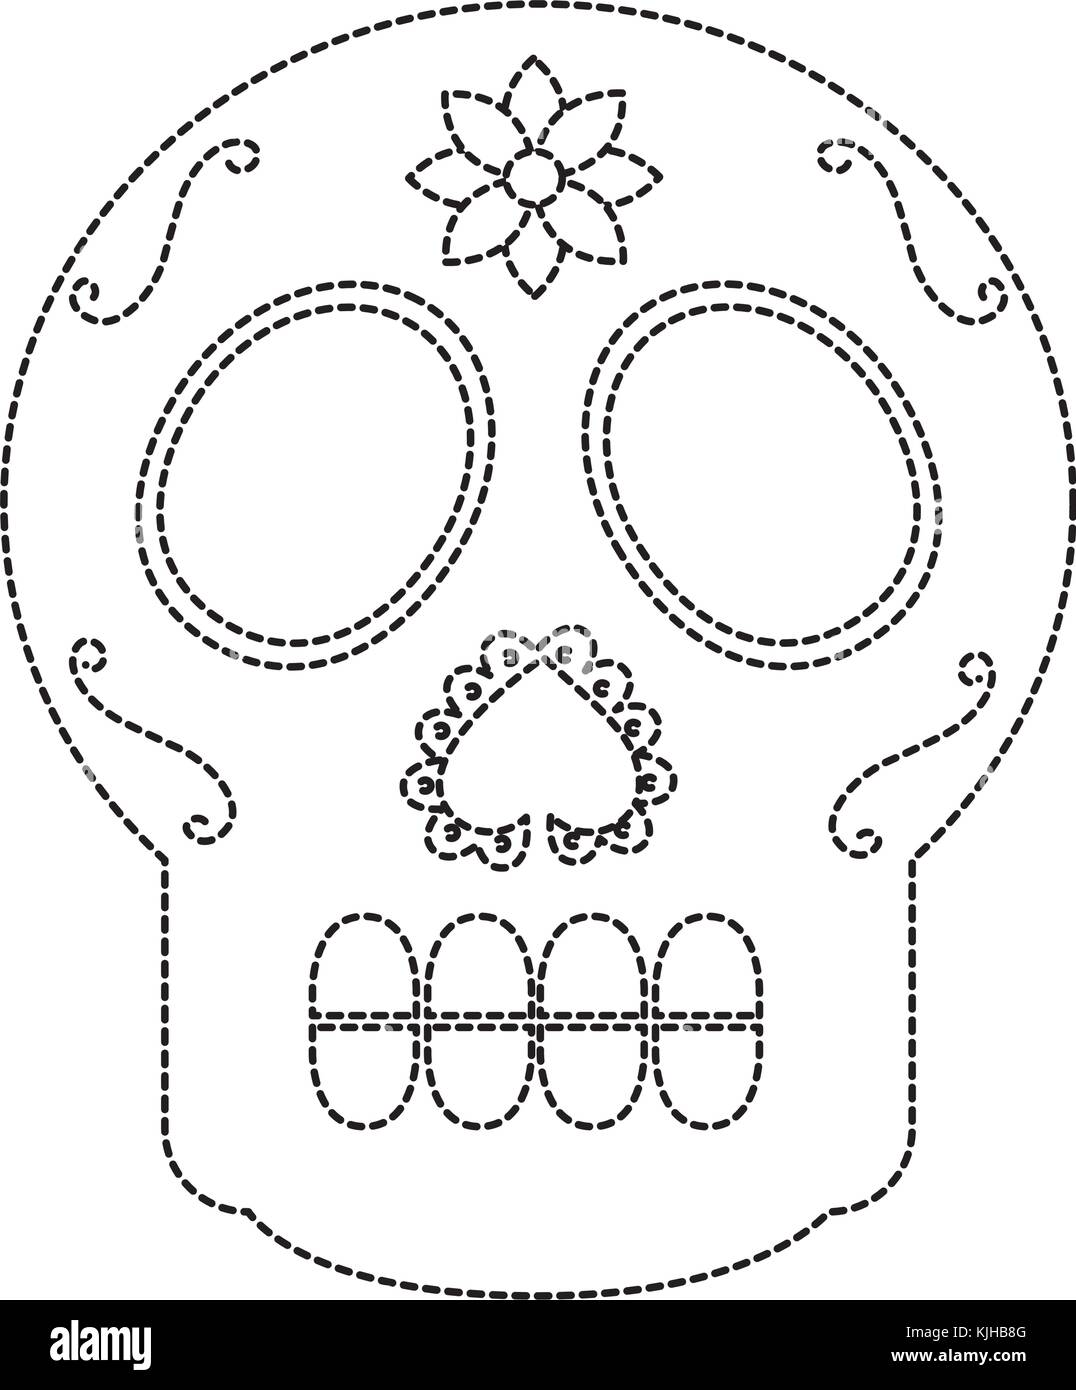 Cranio di zucchero messico cultura immagine dell'icona Illustrazione Vettoriale